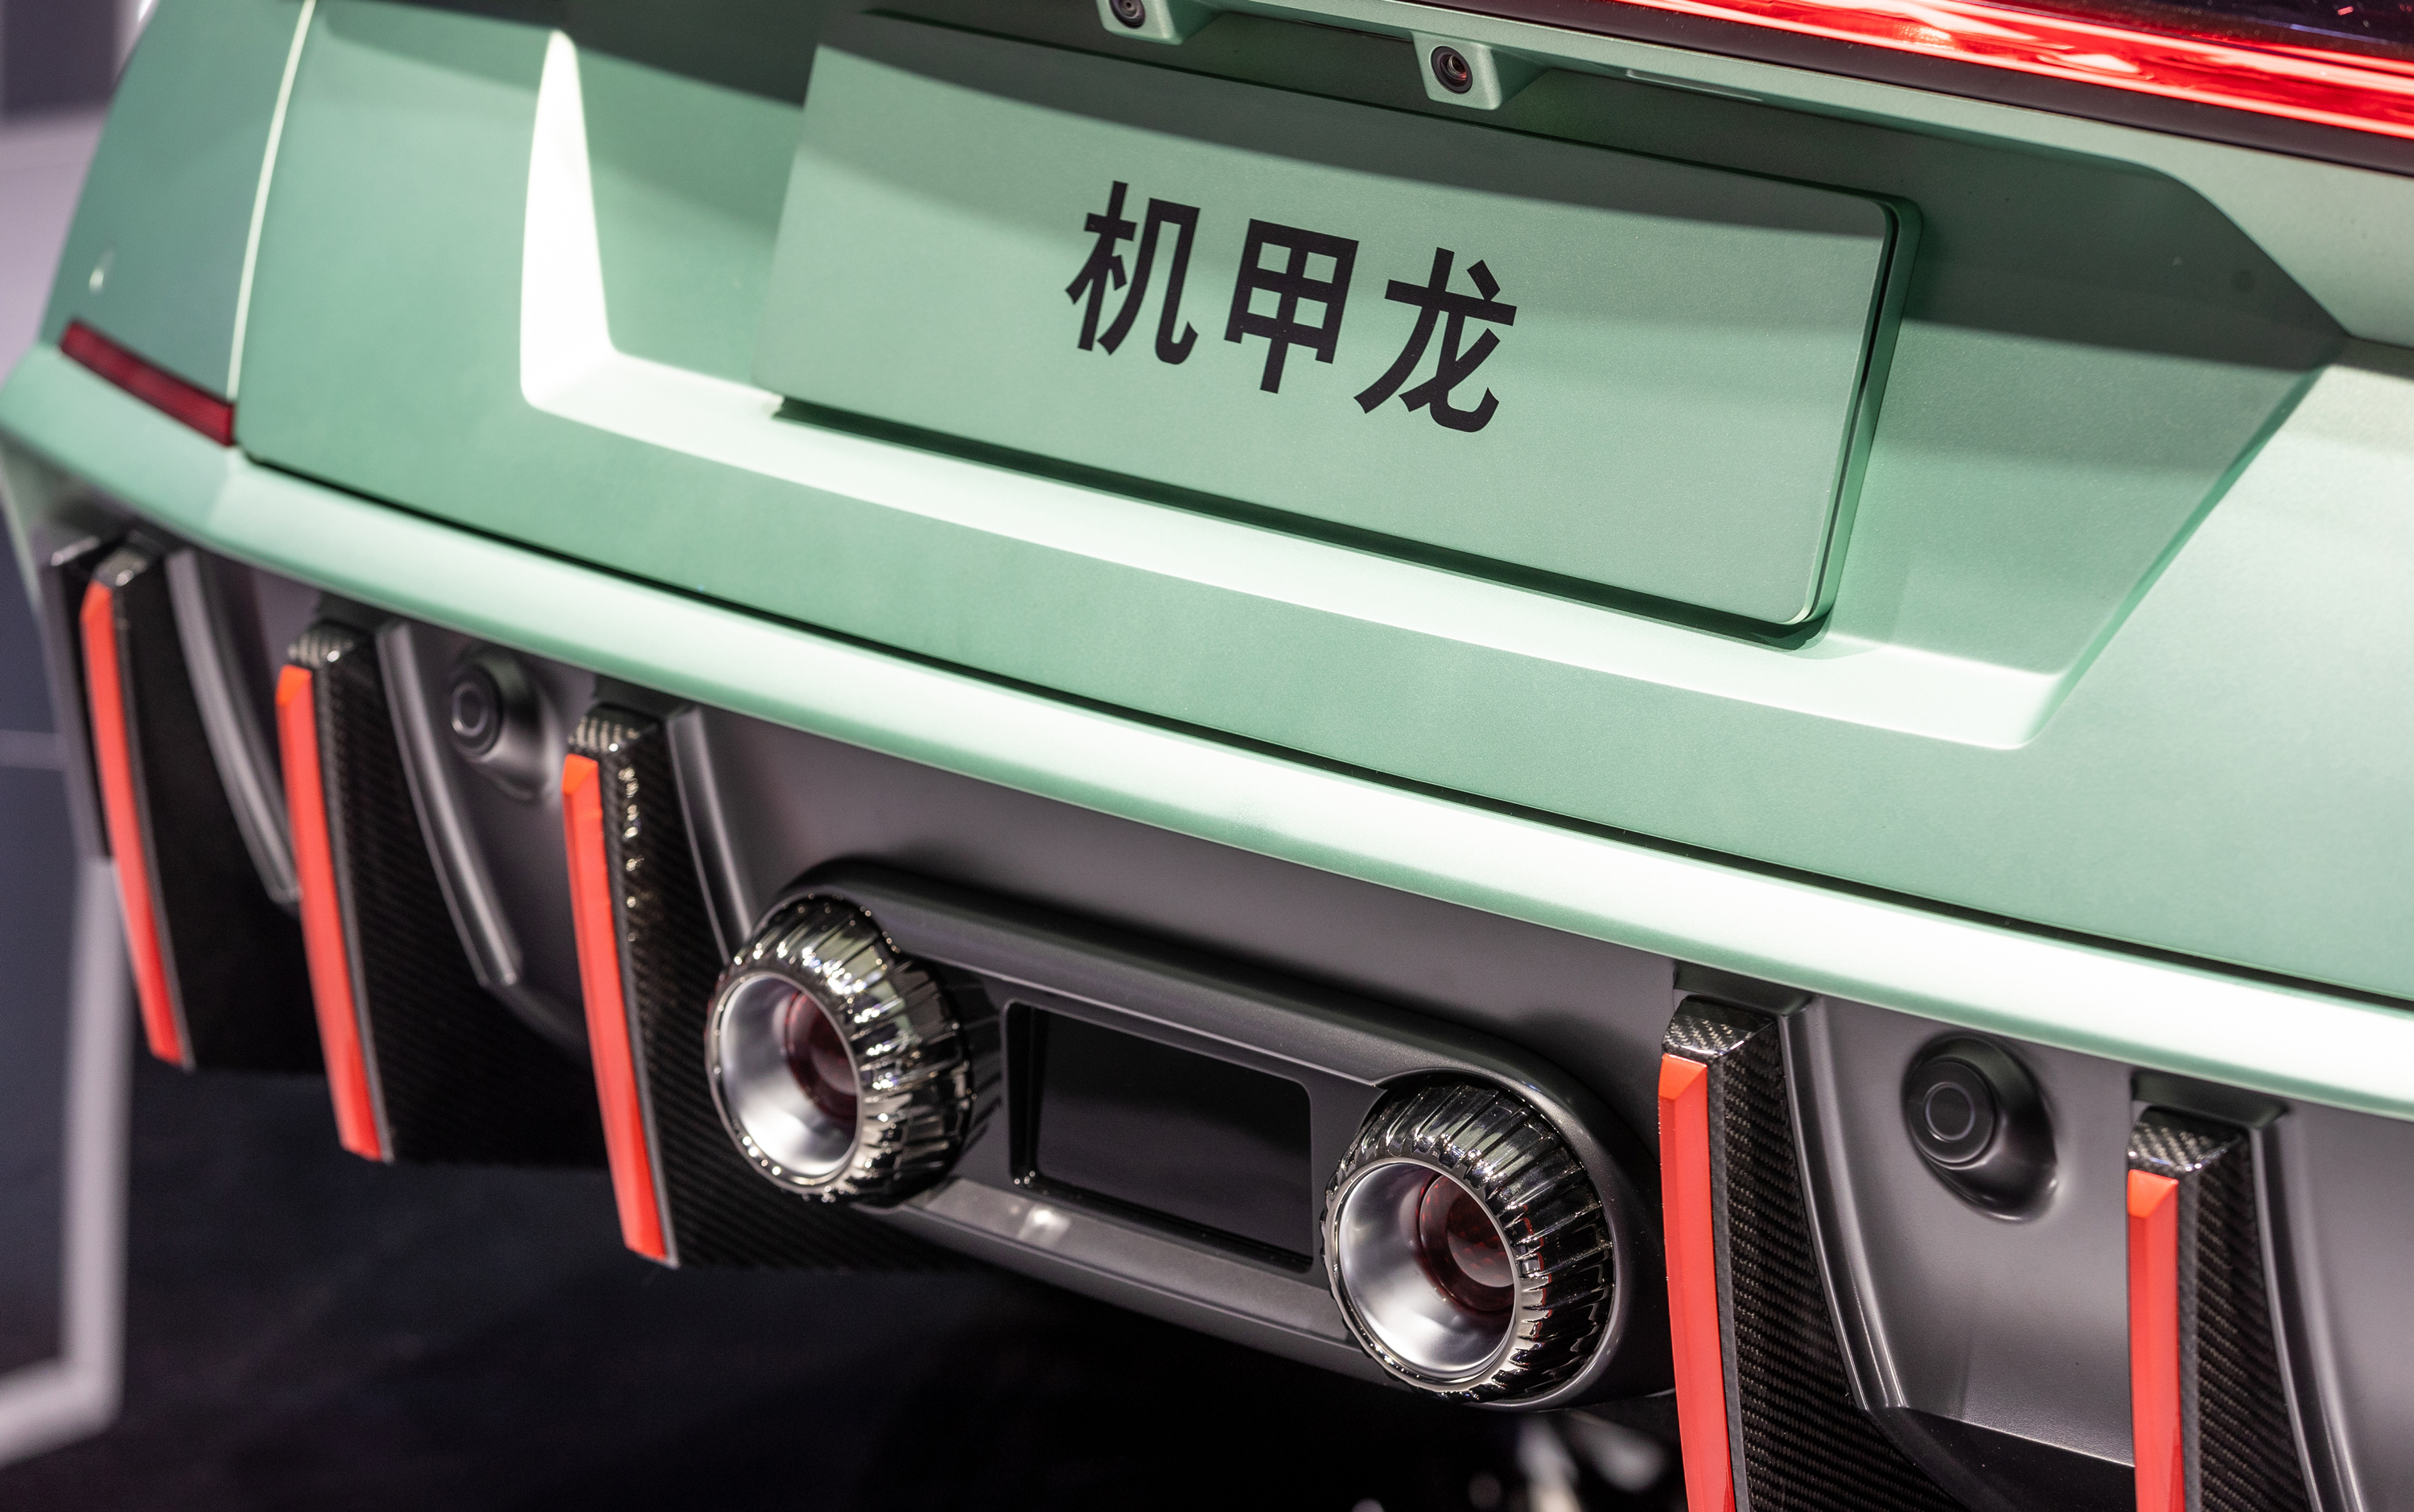 沙龙汽车机甲龙广州车展首发!预售价48.8万,101台限量版被抢空